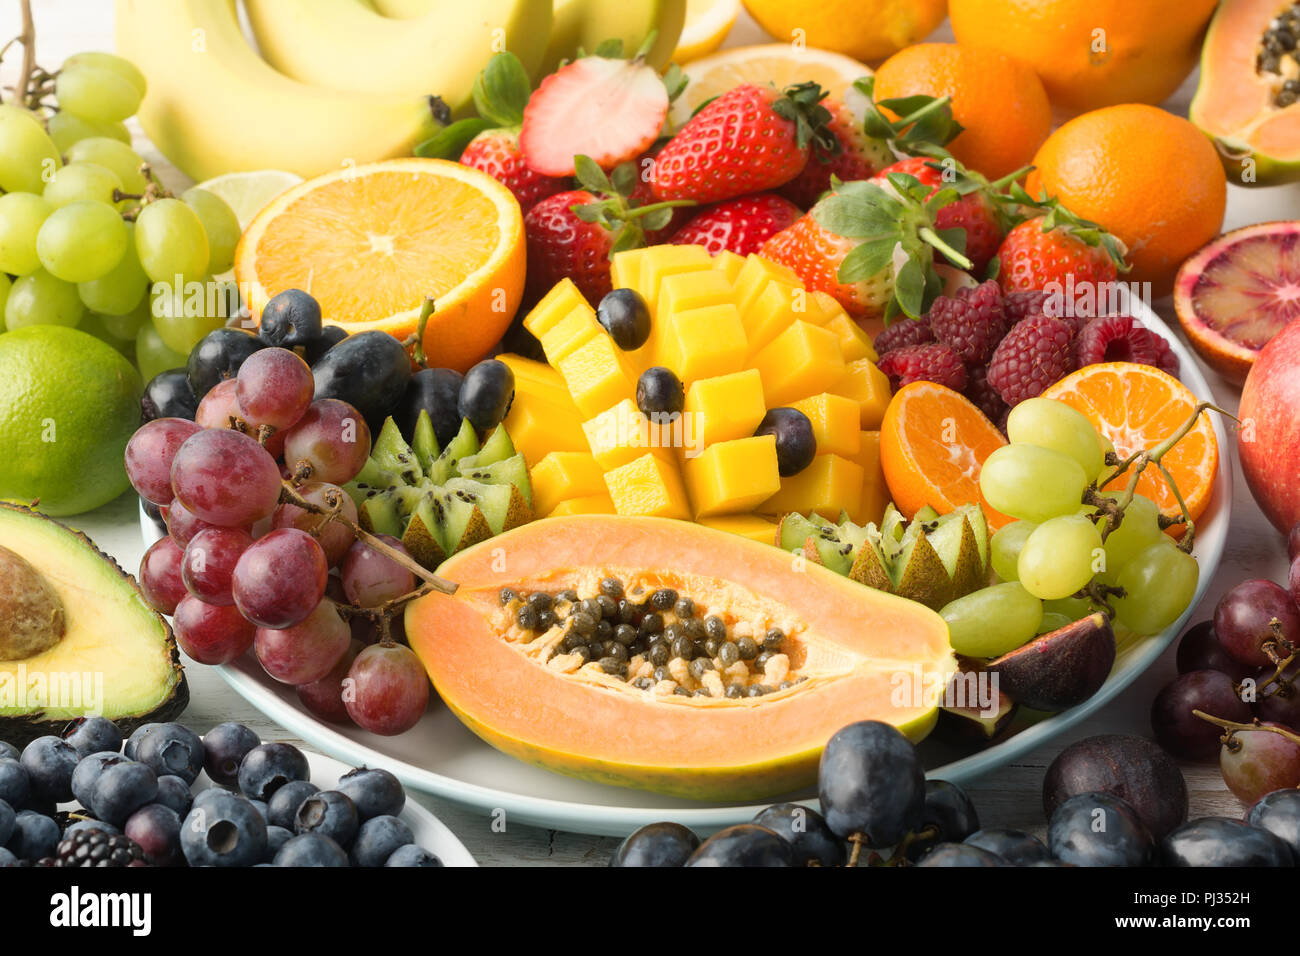 Mangiare sano, di frutta e verdura crude in arcobaleno di colori su una piastra, papaia, mango, uva e bacche, arancio, su off tavolo bianco, il fuoco selettivo Foto Stock